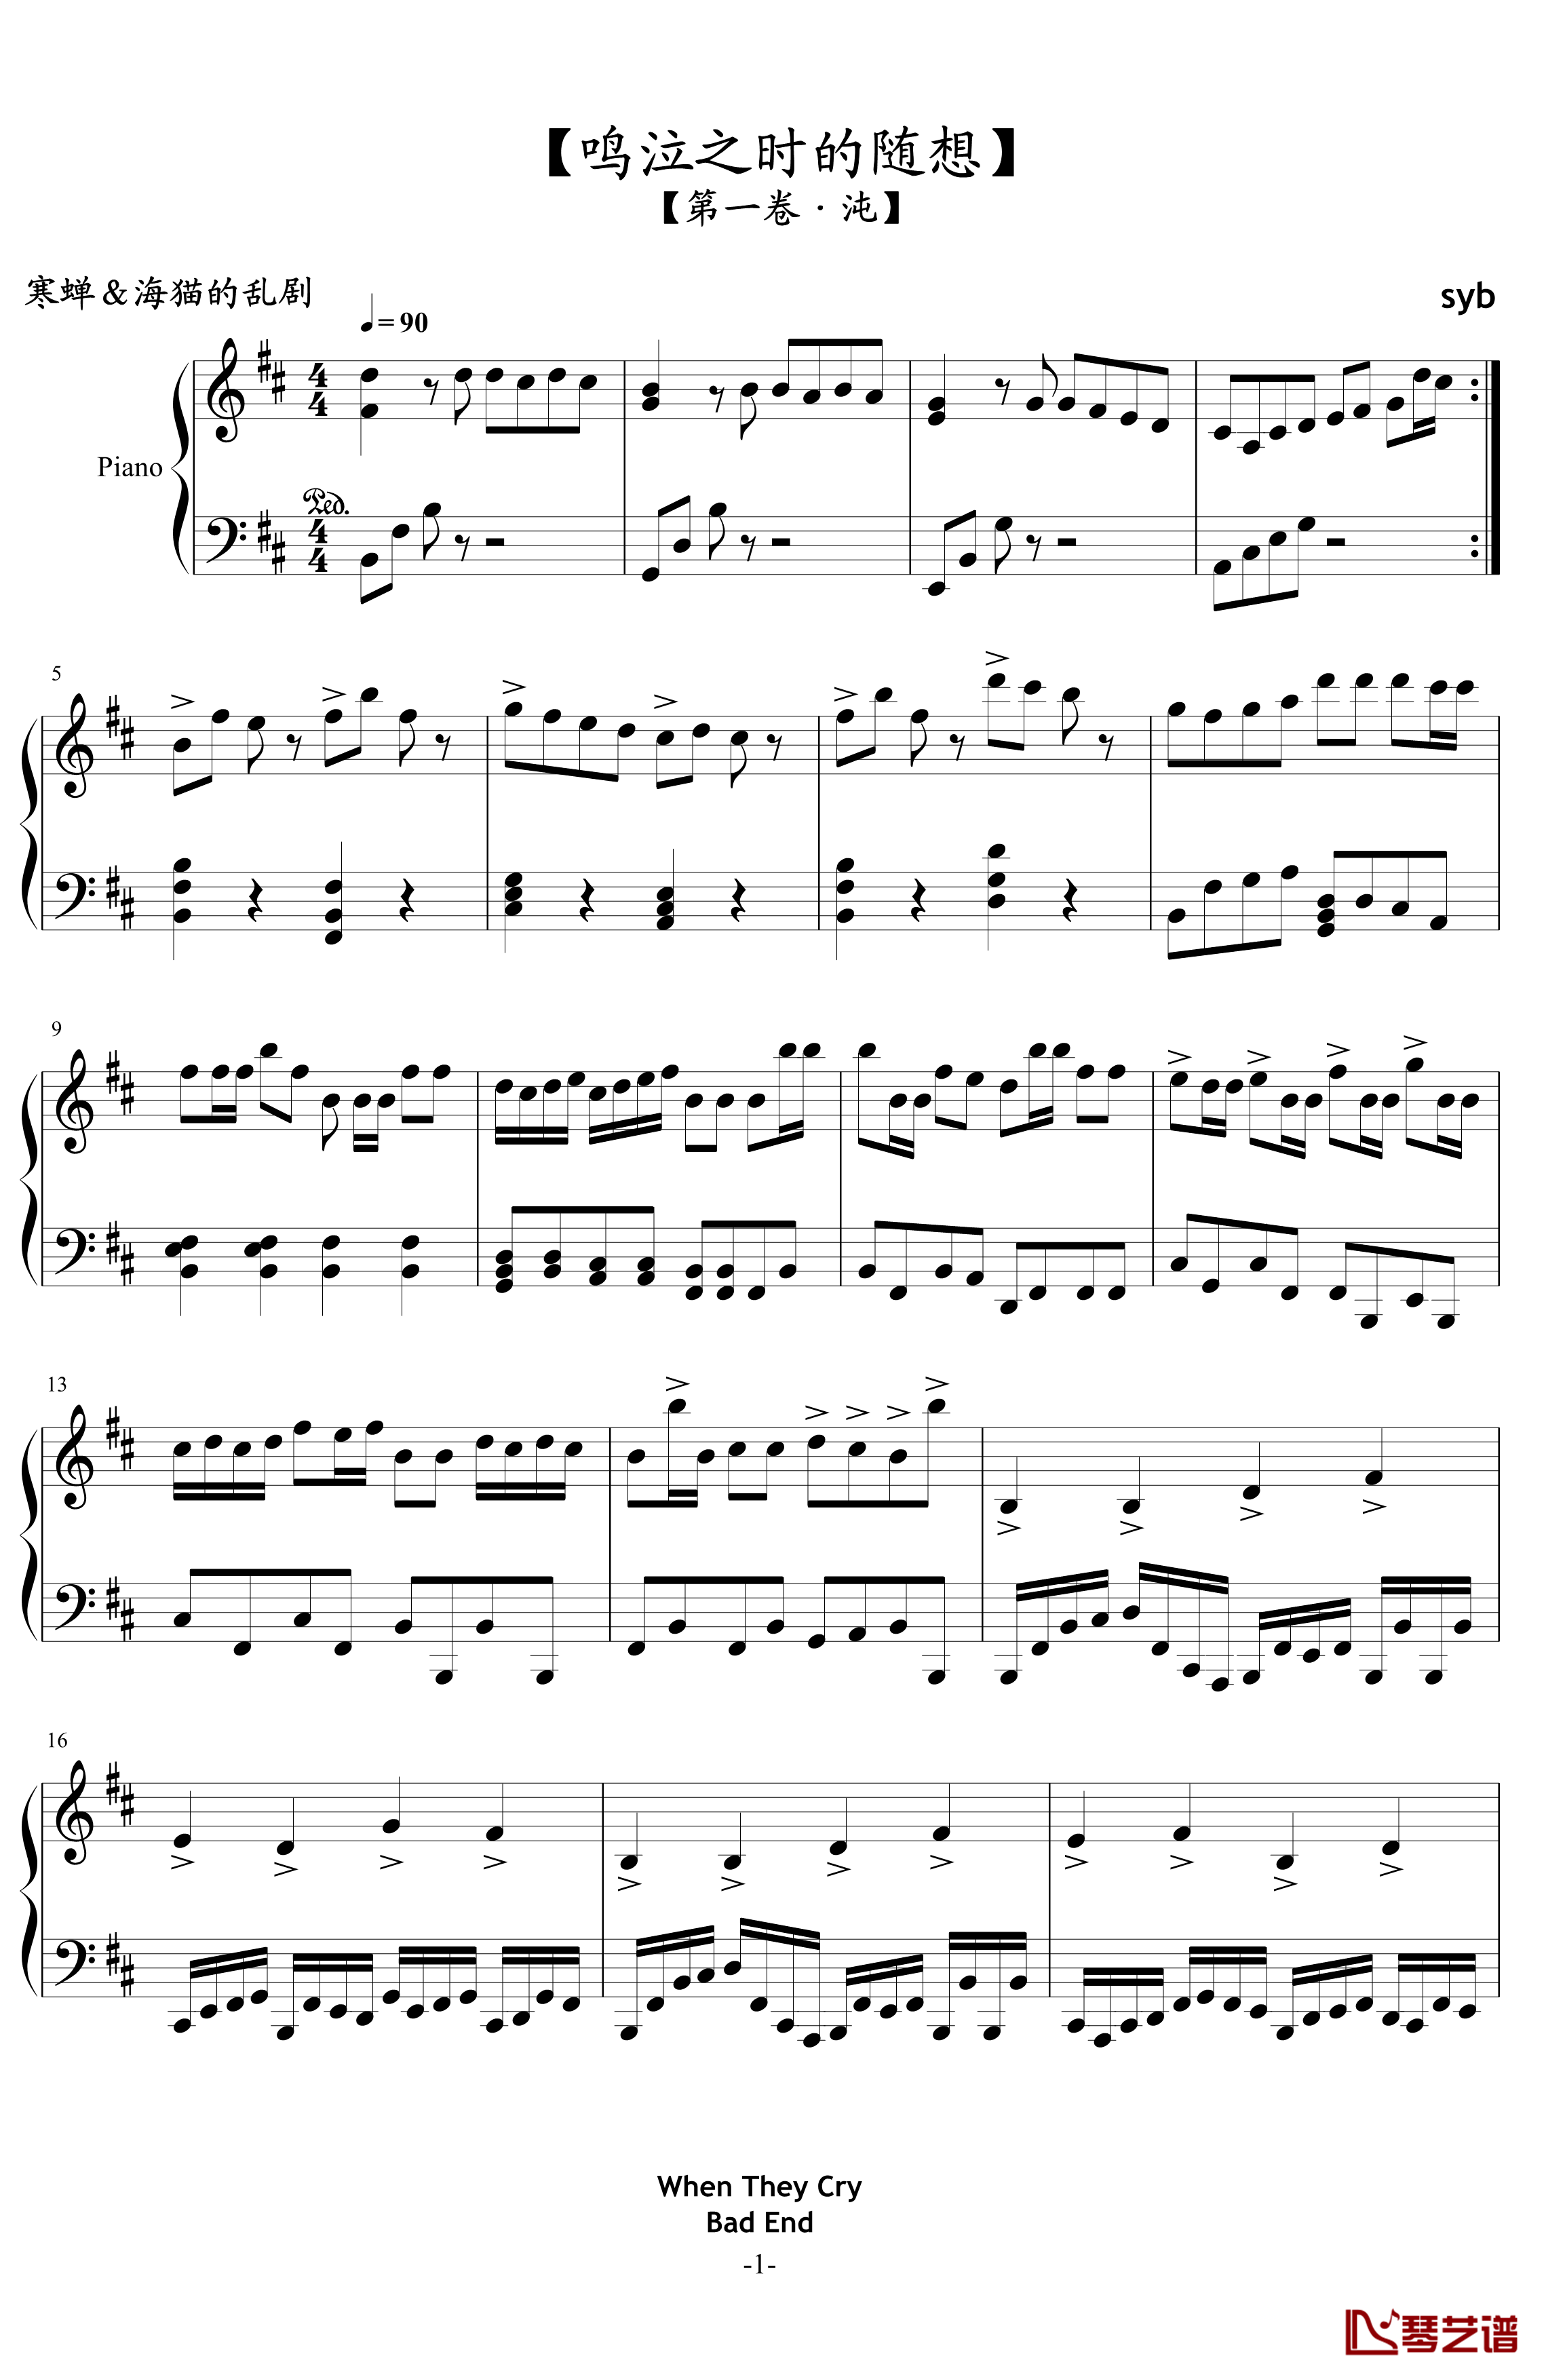 鸣泣之时的随想钢琴谱-syb1